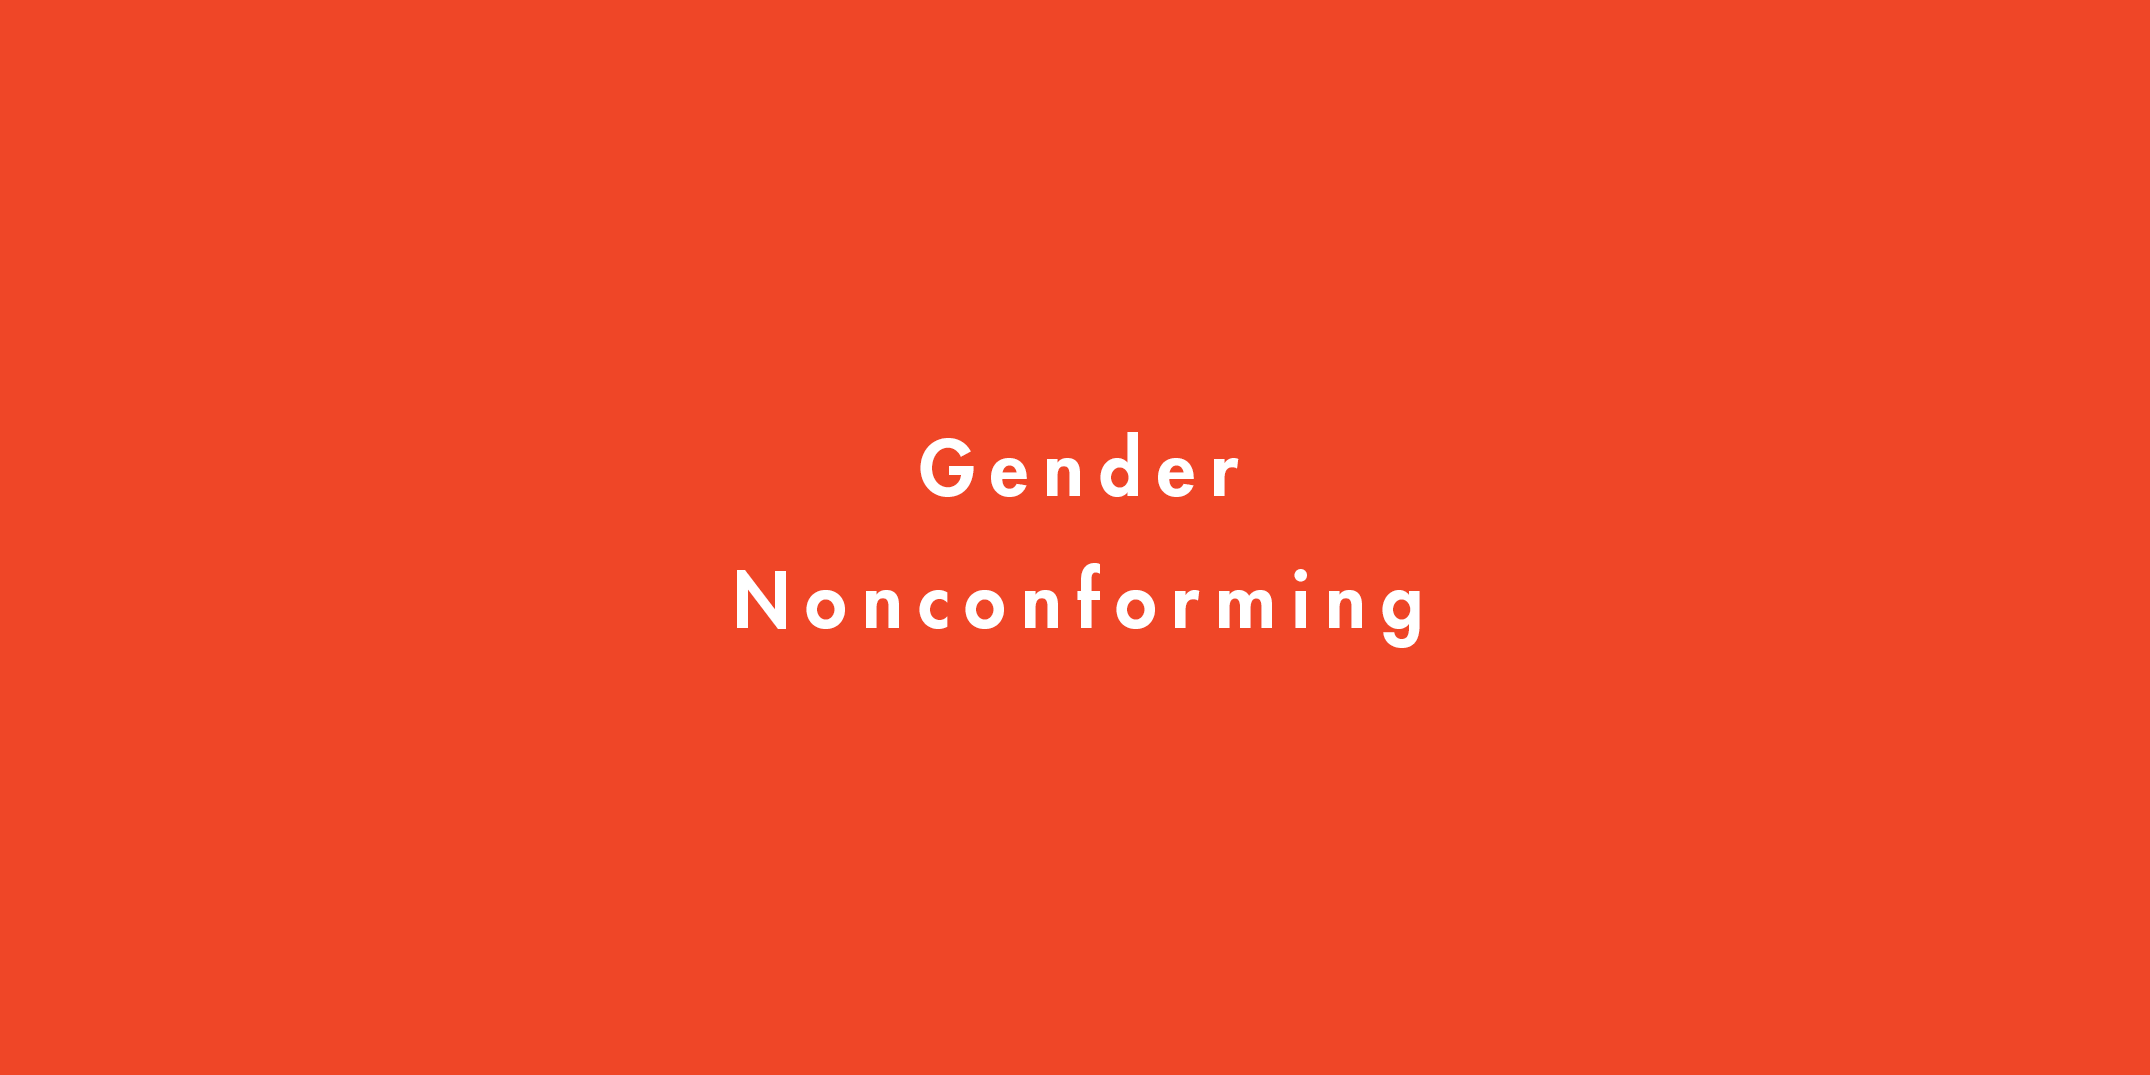 多様な性を包括する「ジェンダー・ノンコンフォーミング」を解説